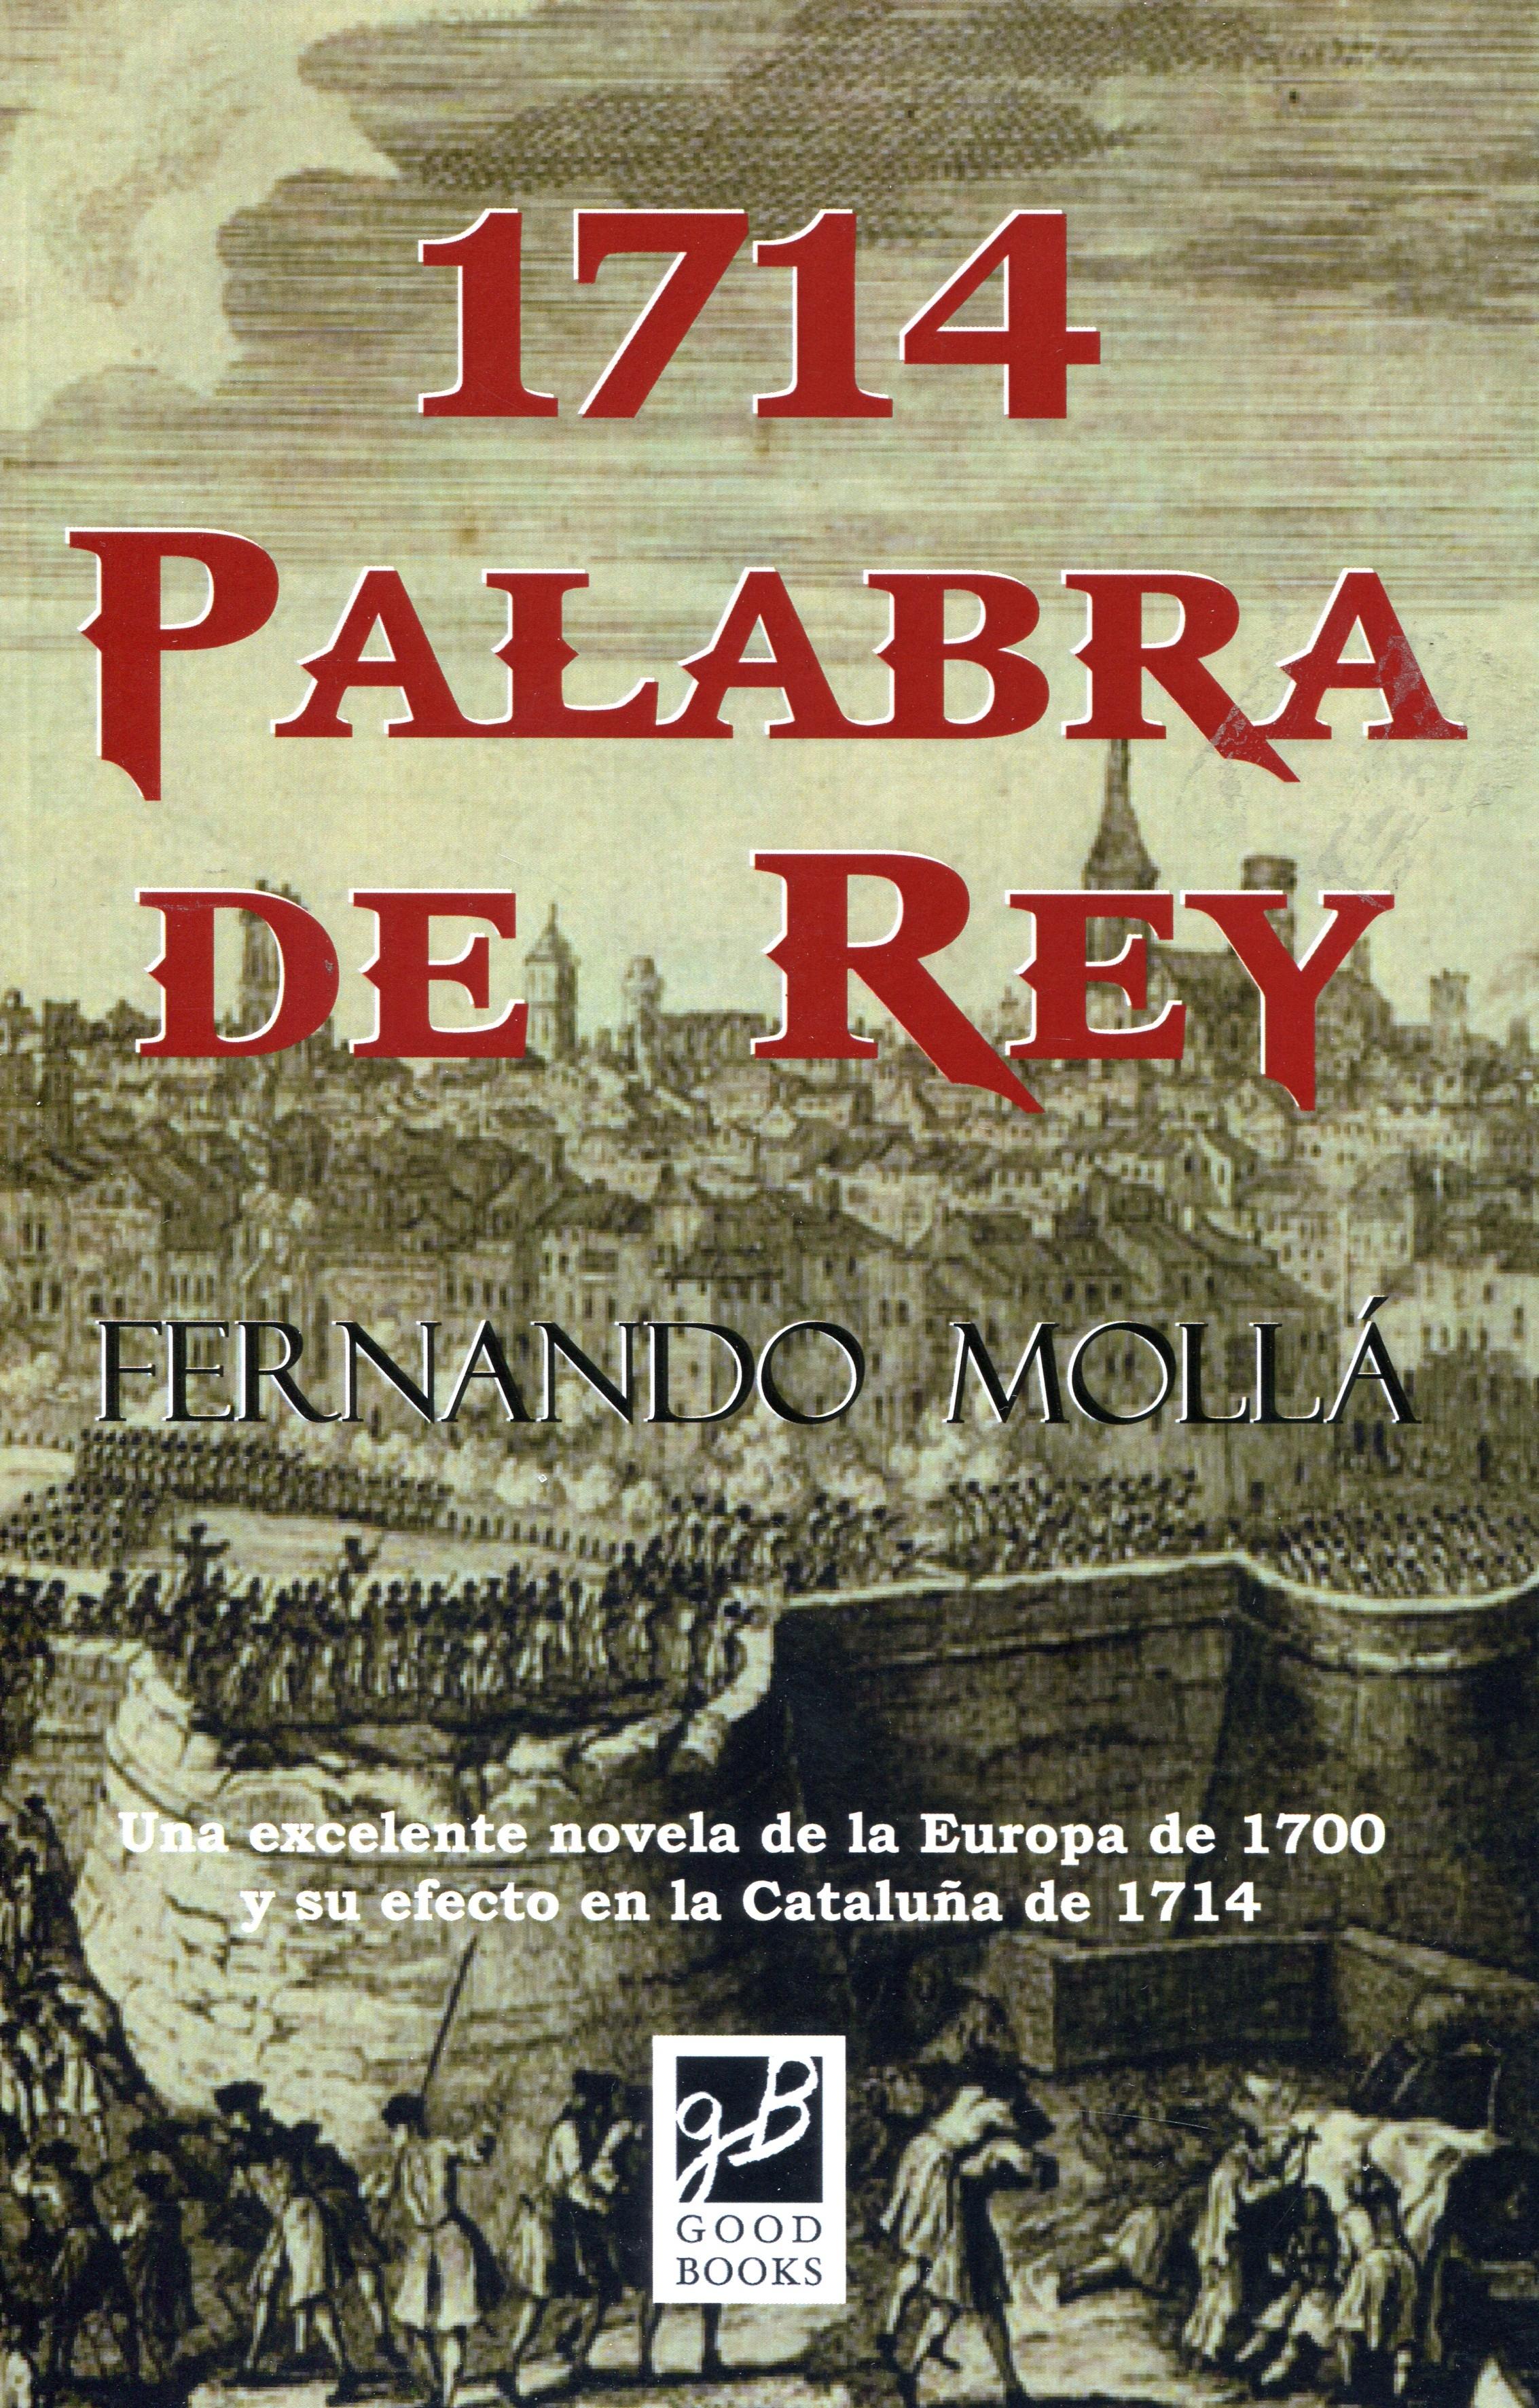 1714 Palabra de Rey